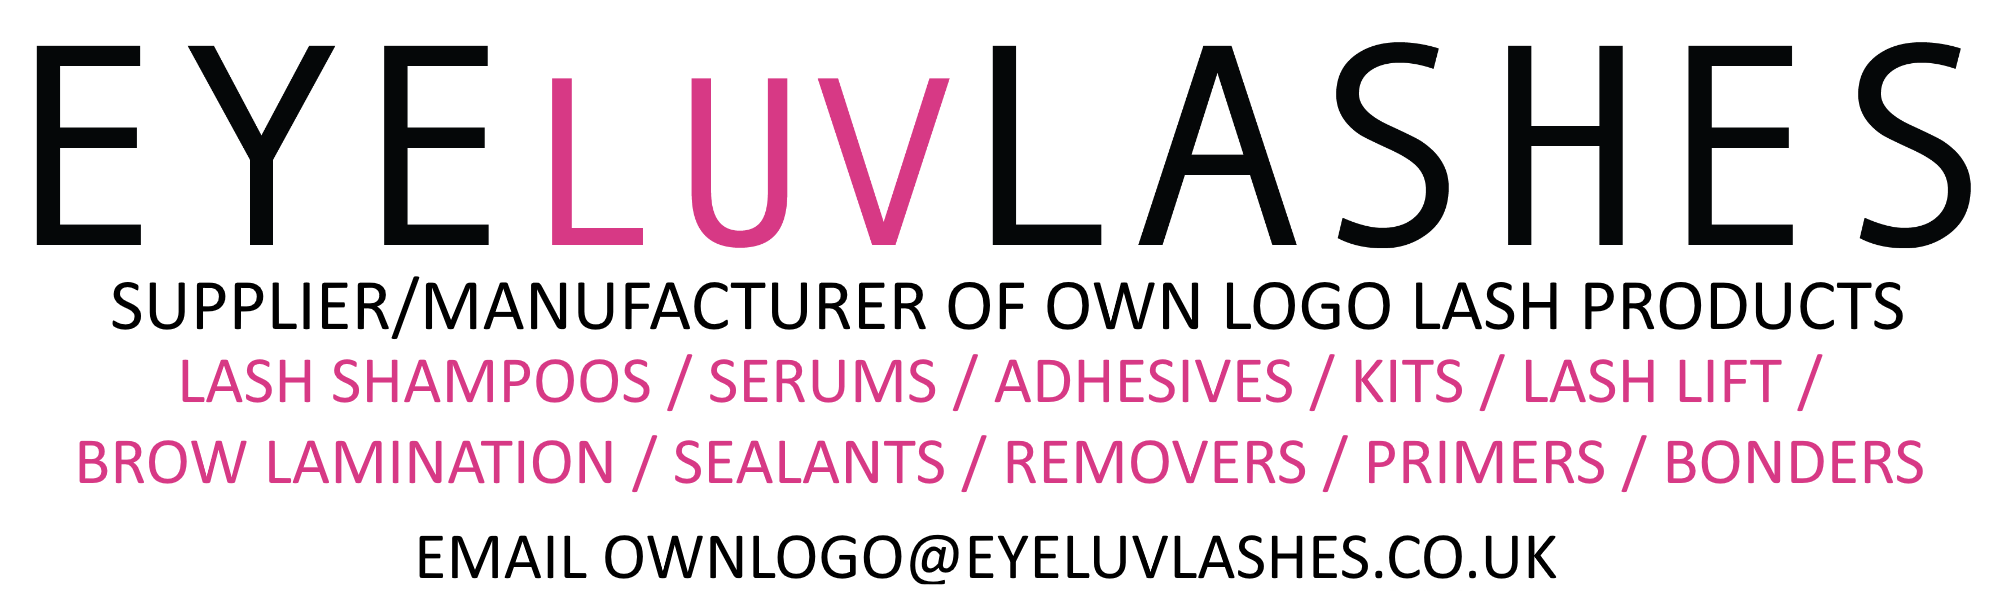 Eyeluvlashes Lash Supplier